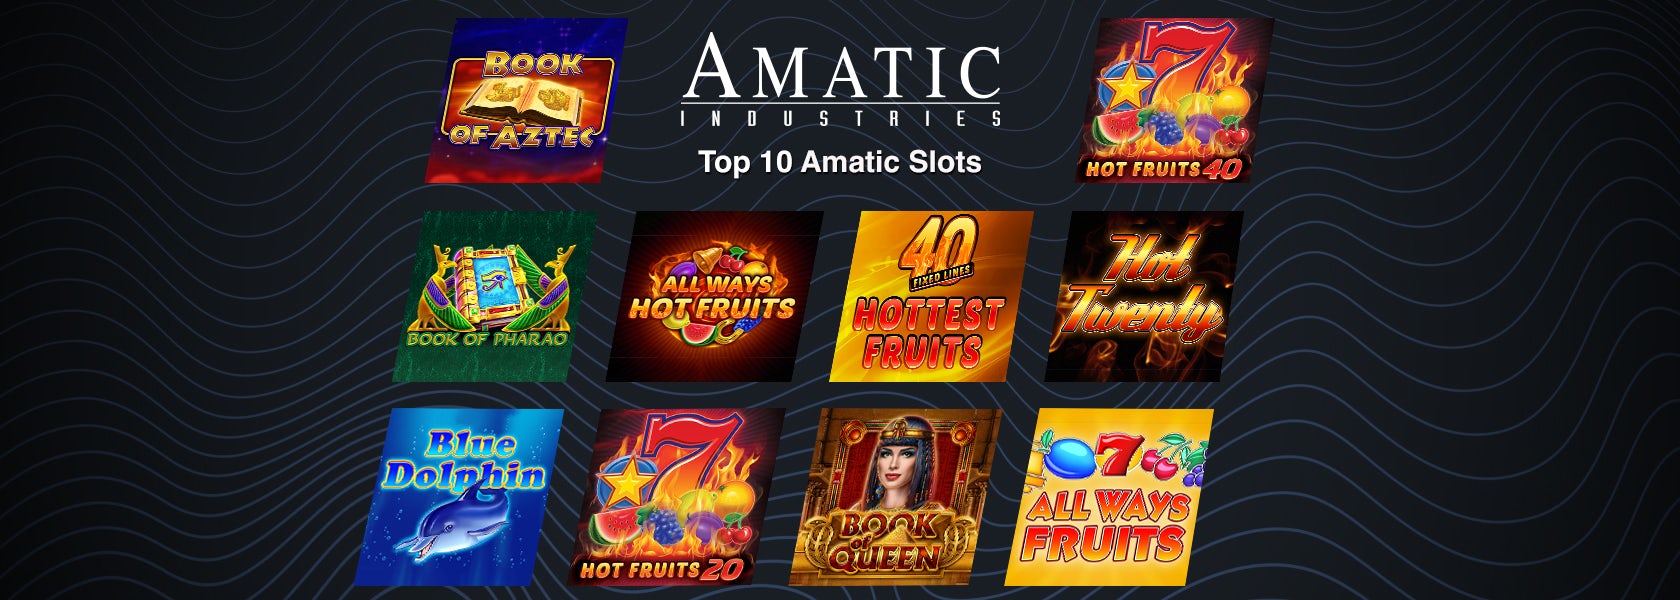 Die 10 besten Amatic Slots